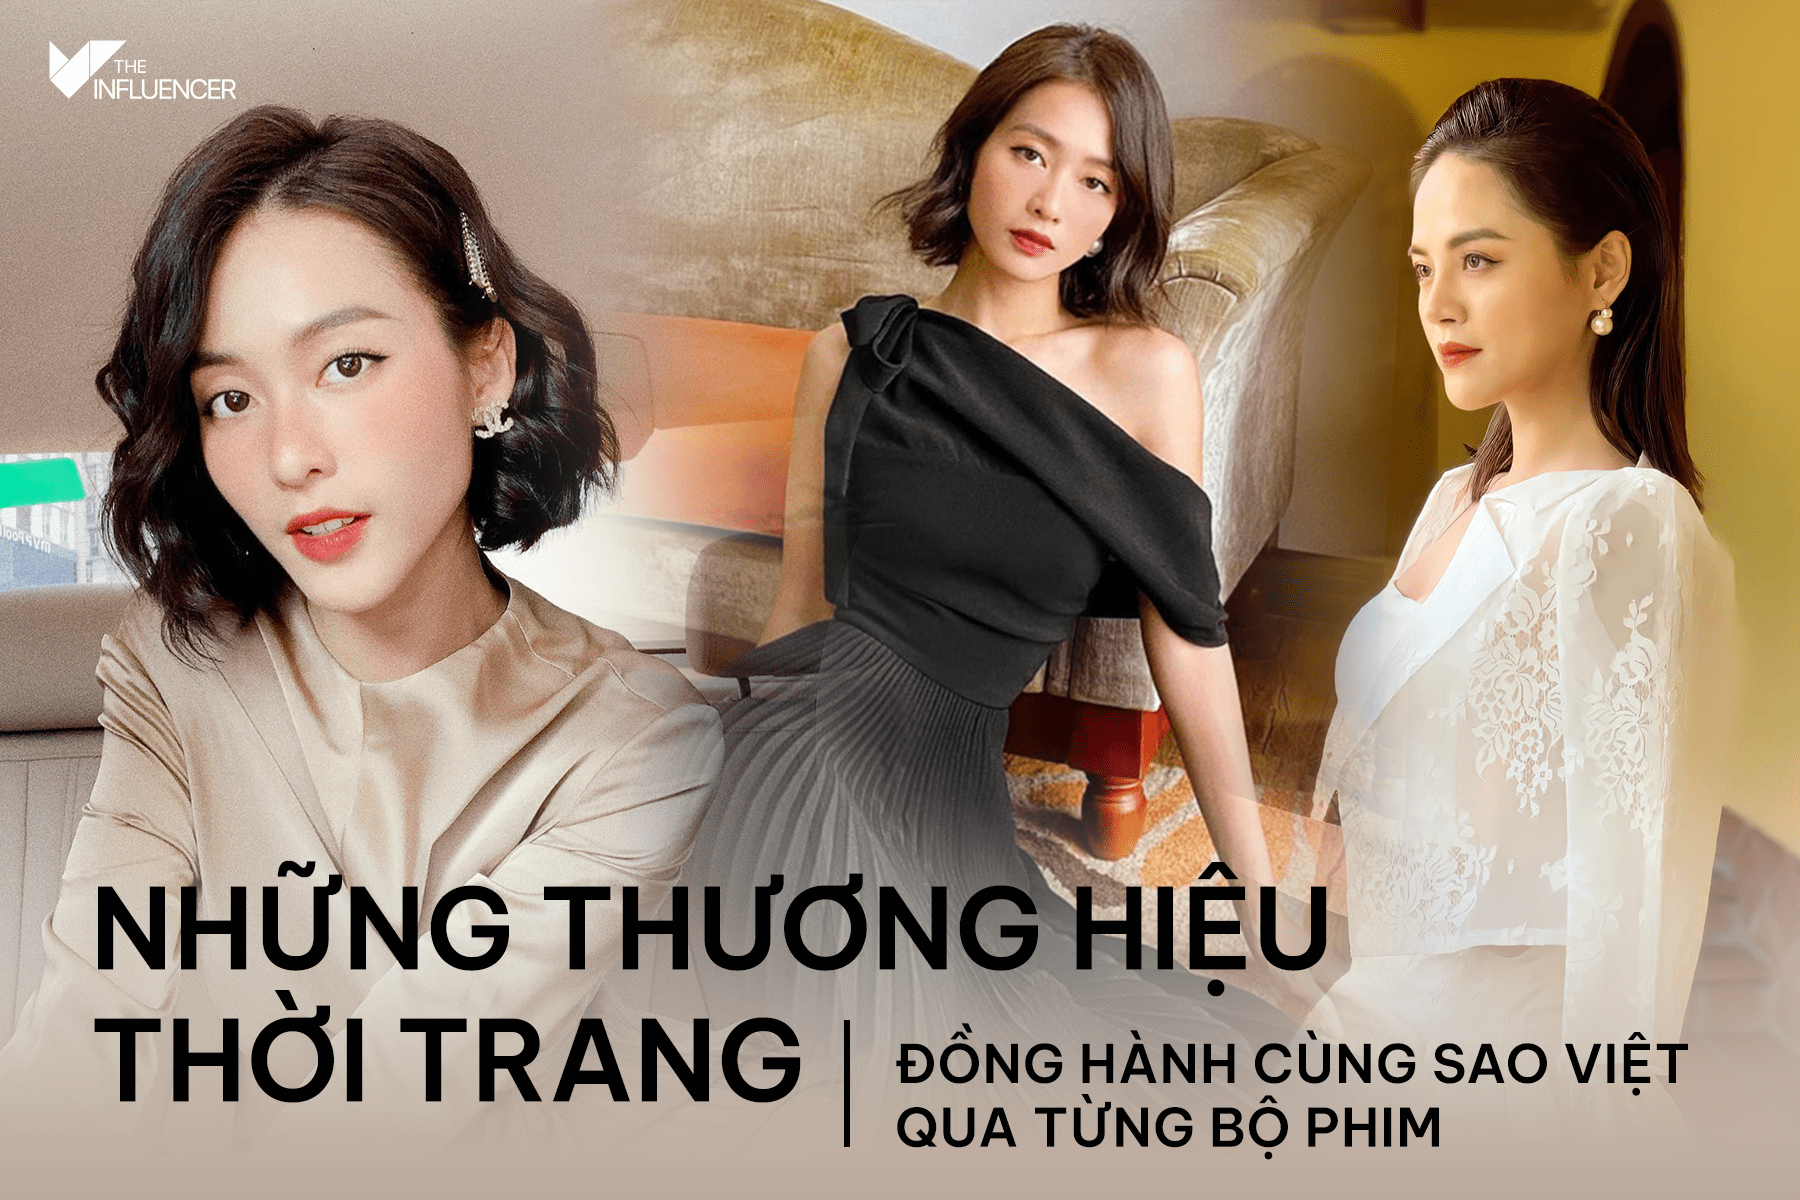 Những thương hiệu thời trang đồng hành cùng sao Việt qua từng bộ phim